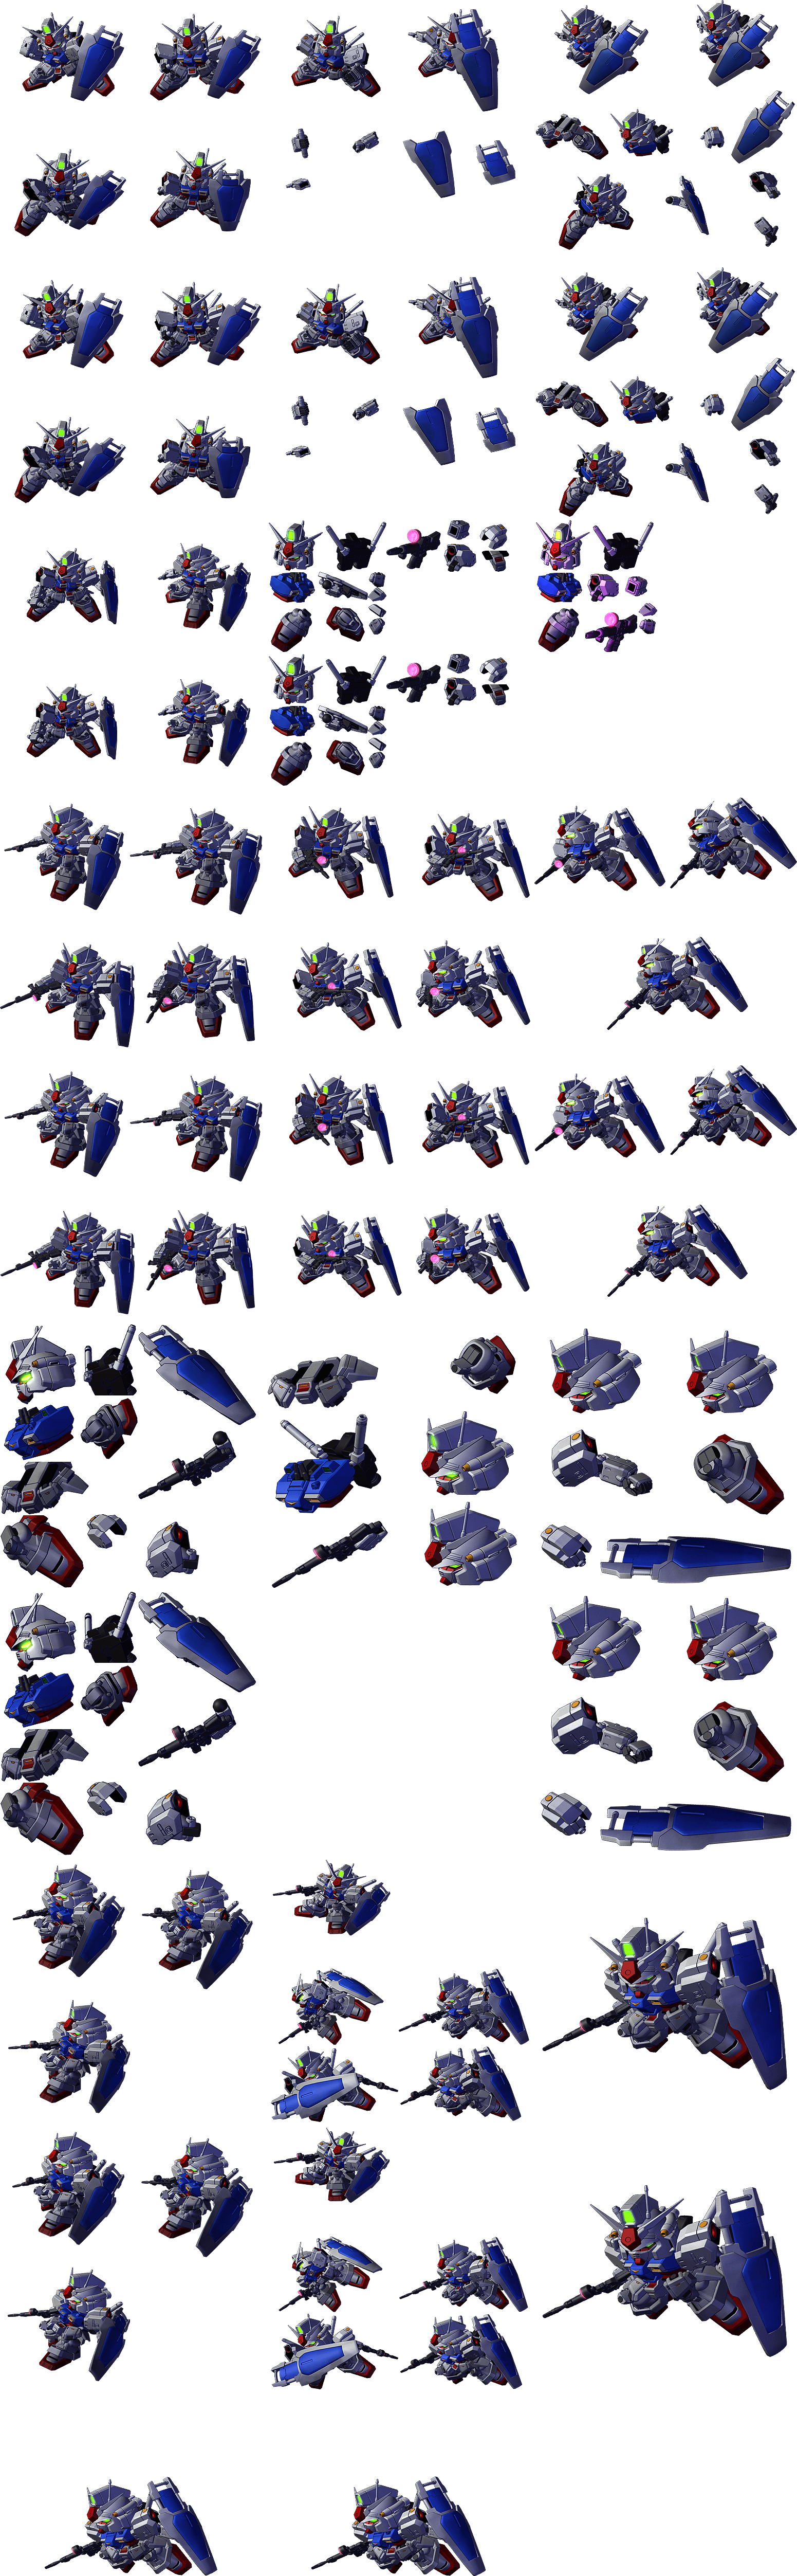 Gundam Unit 1 Zephyranthes